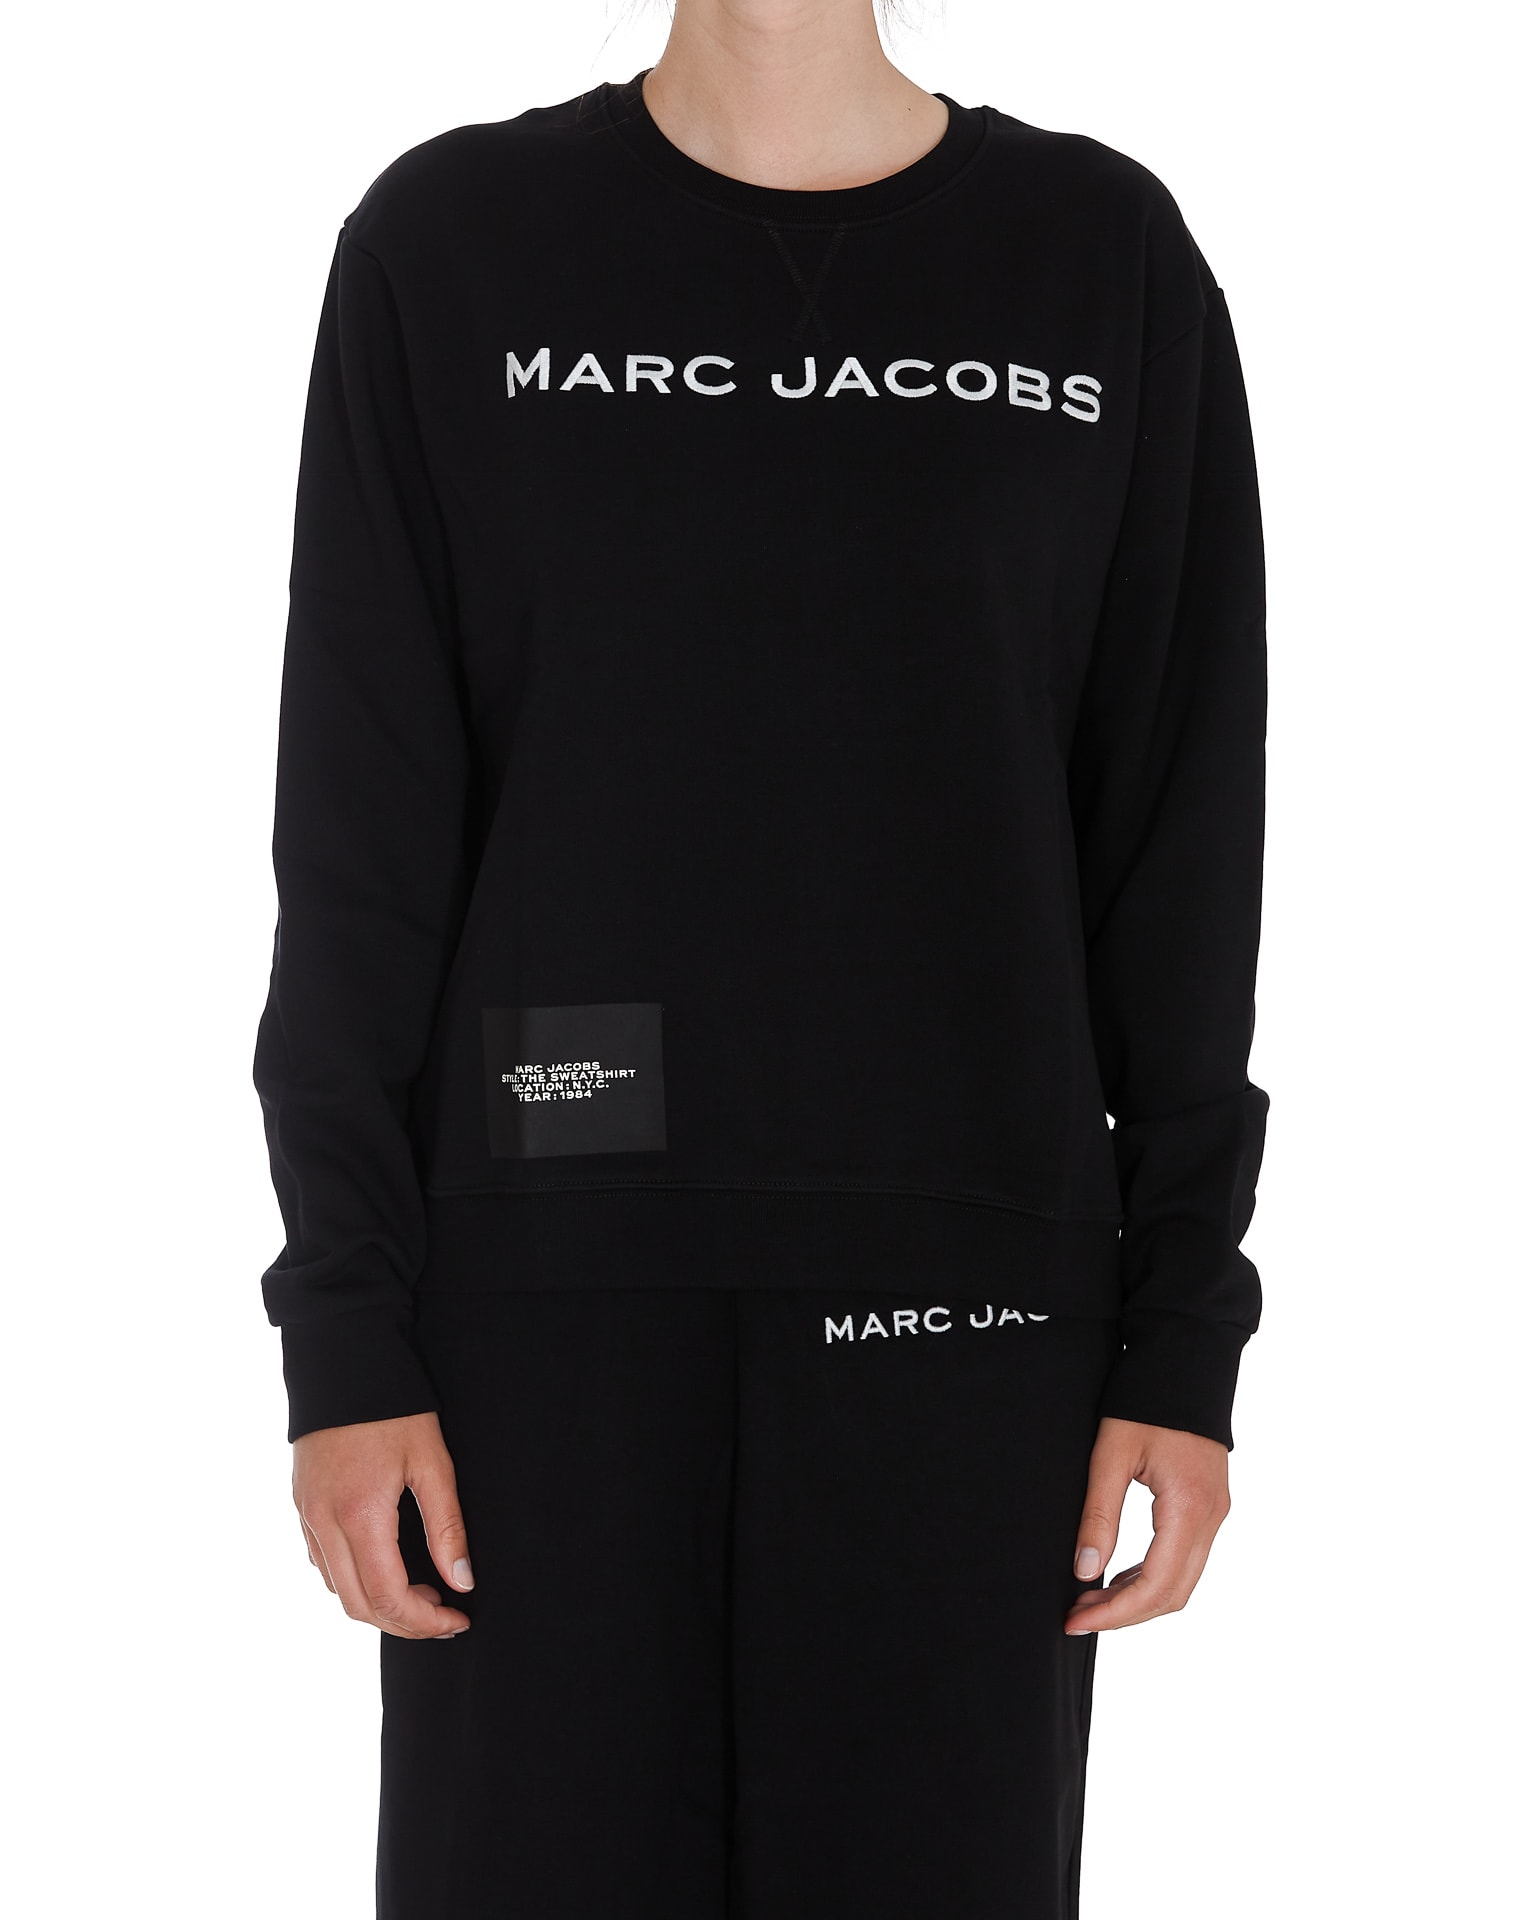 Marc Jacobs The Sweatshirt Sweatshirt